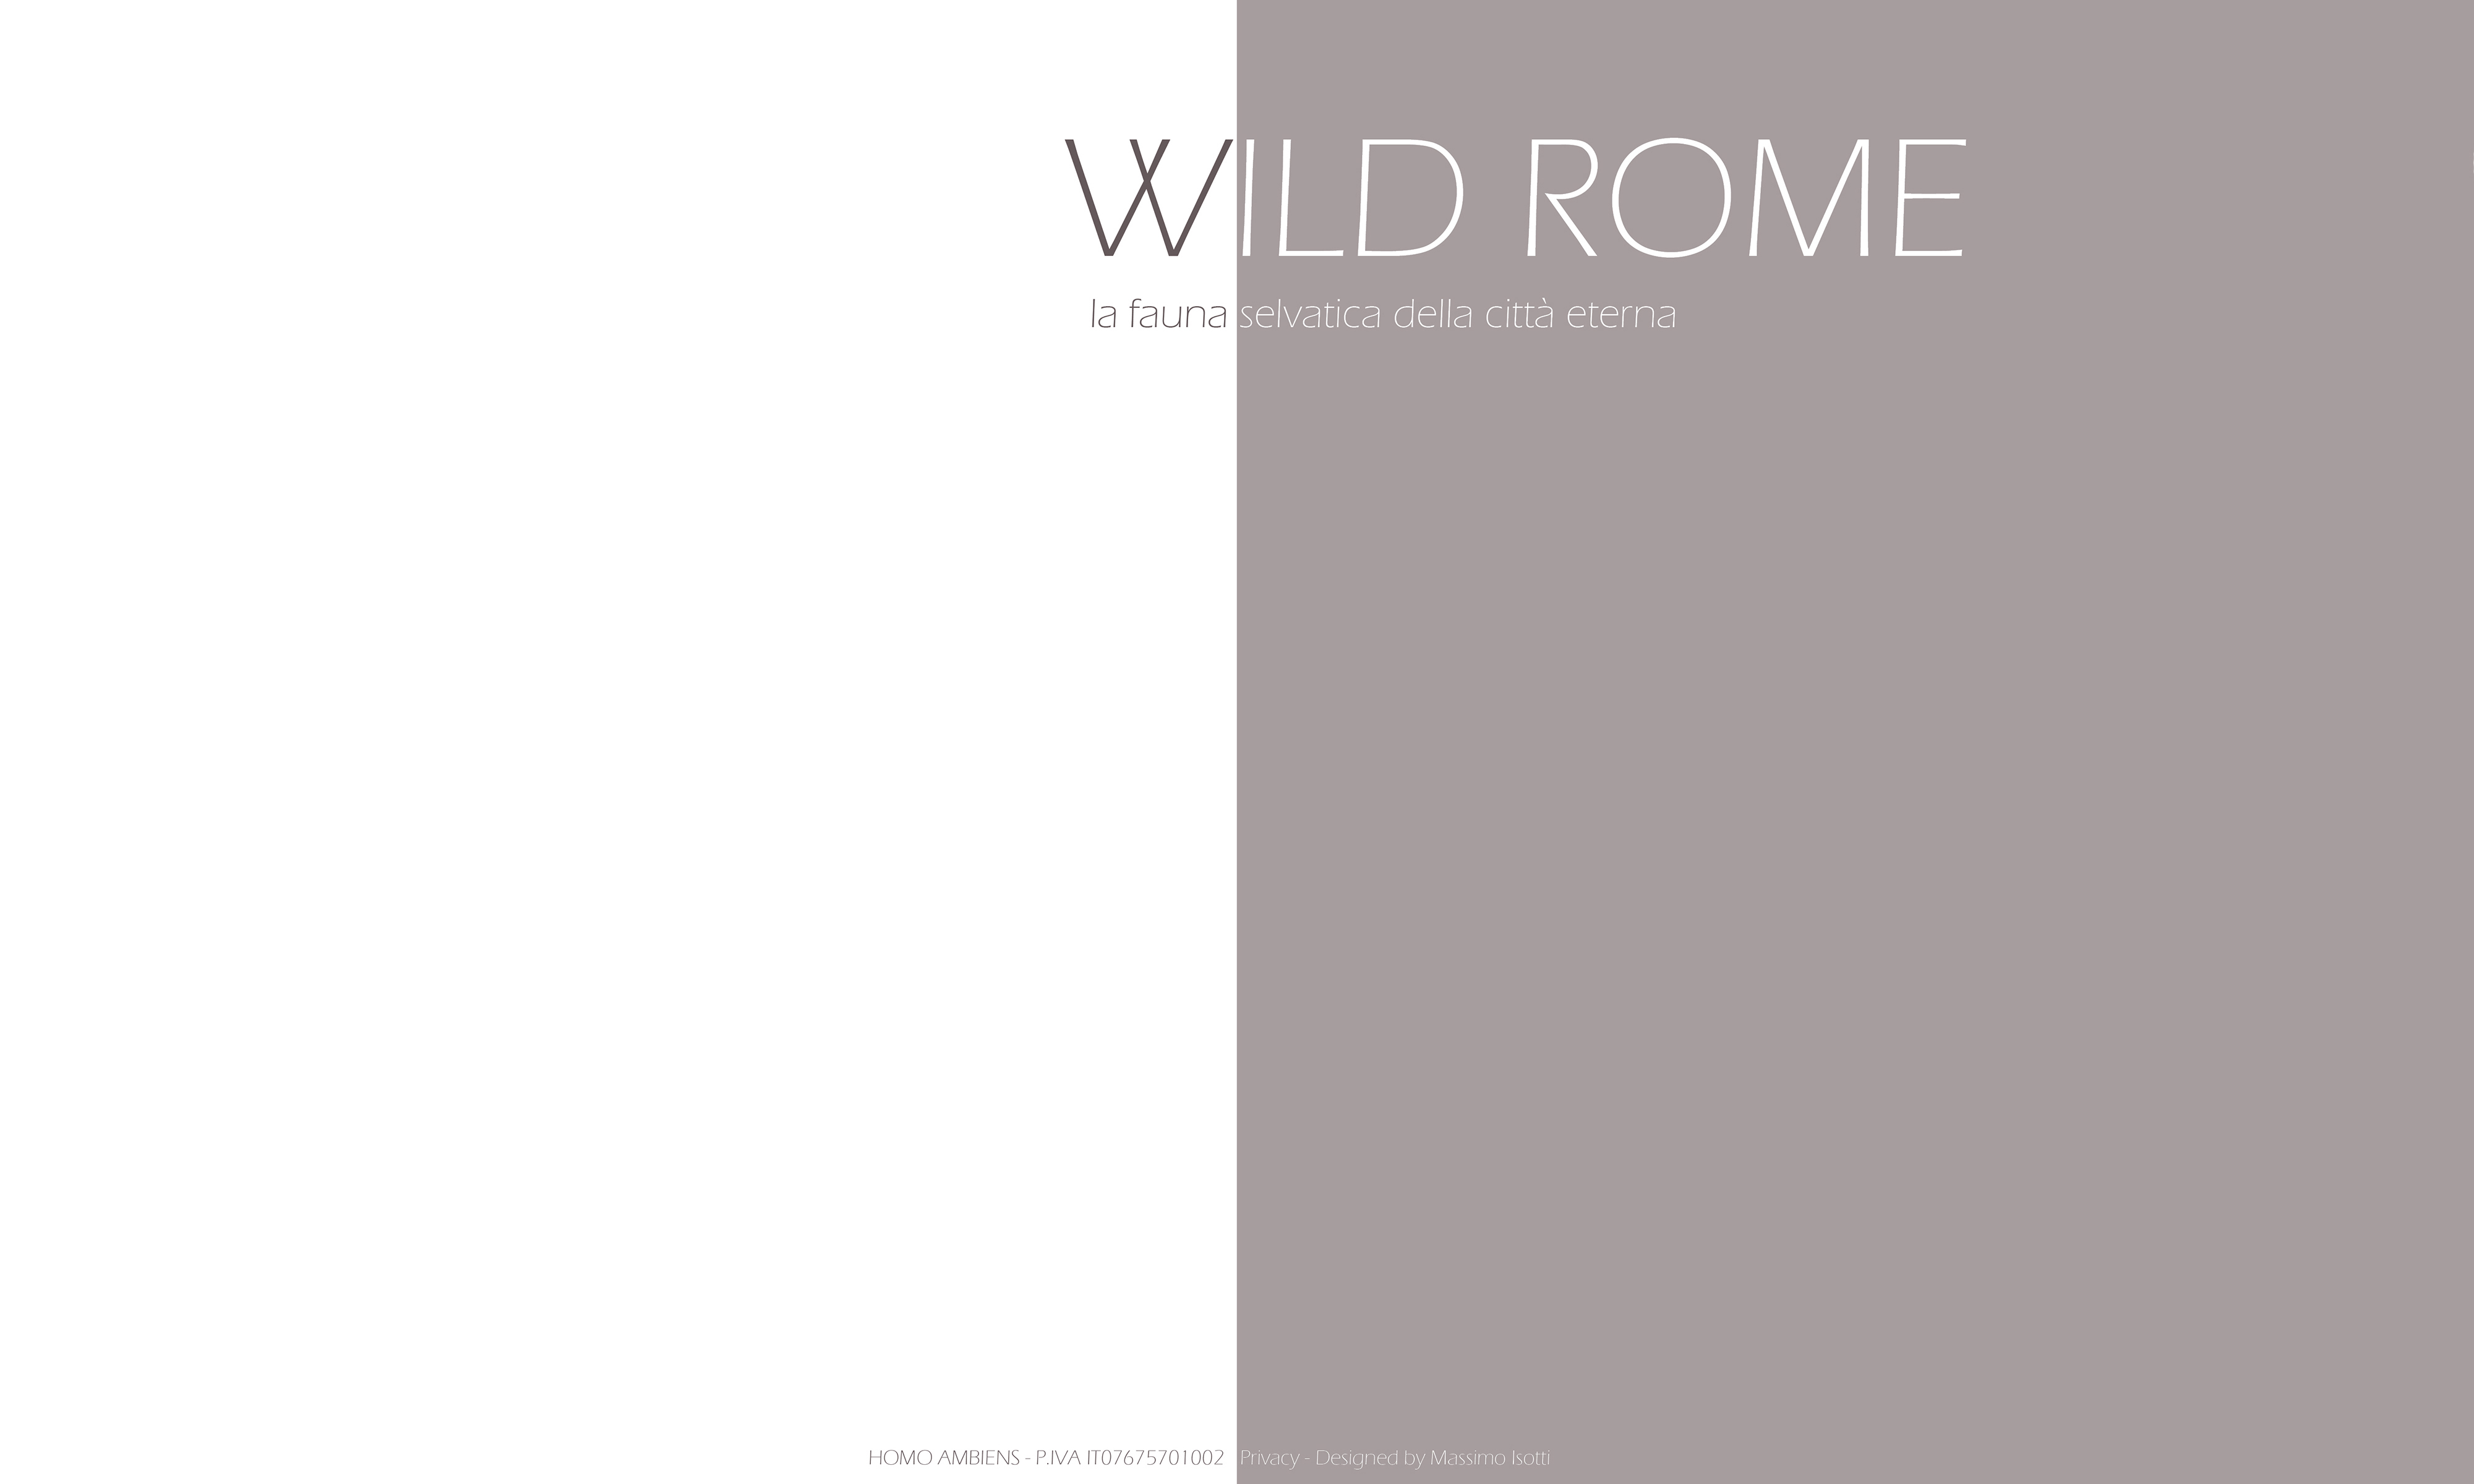 WILD ROME